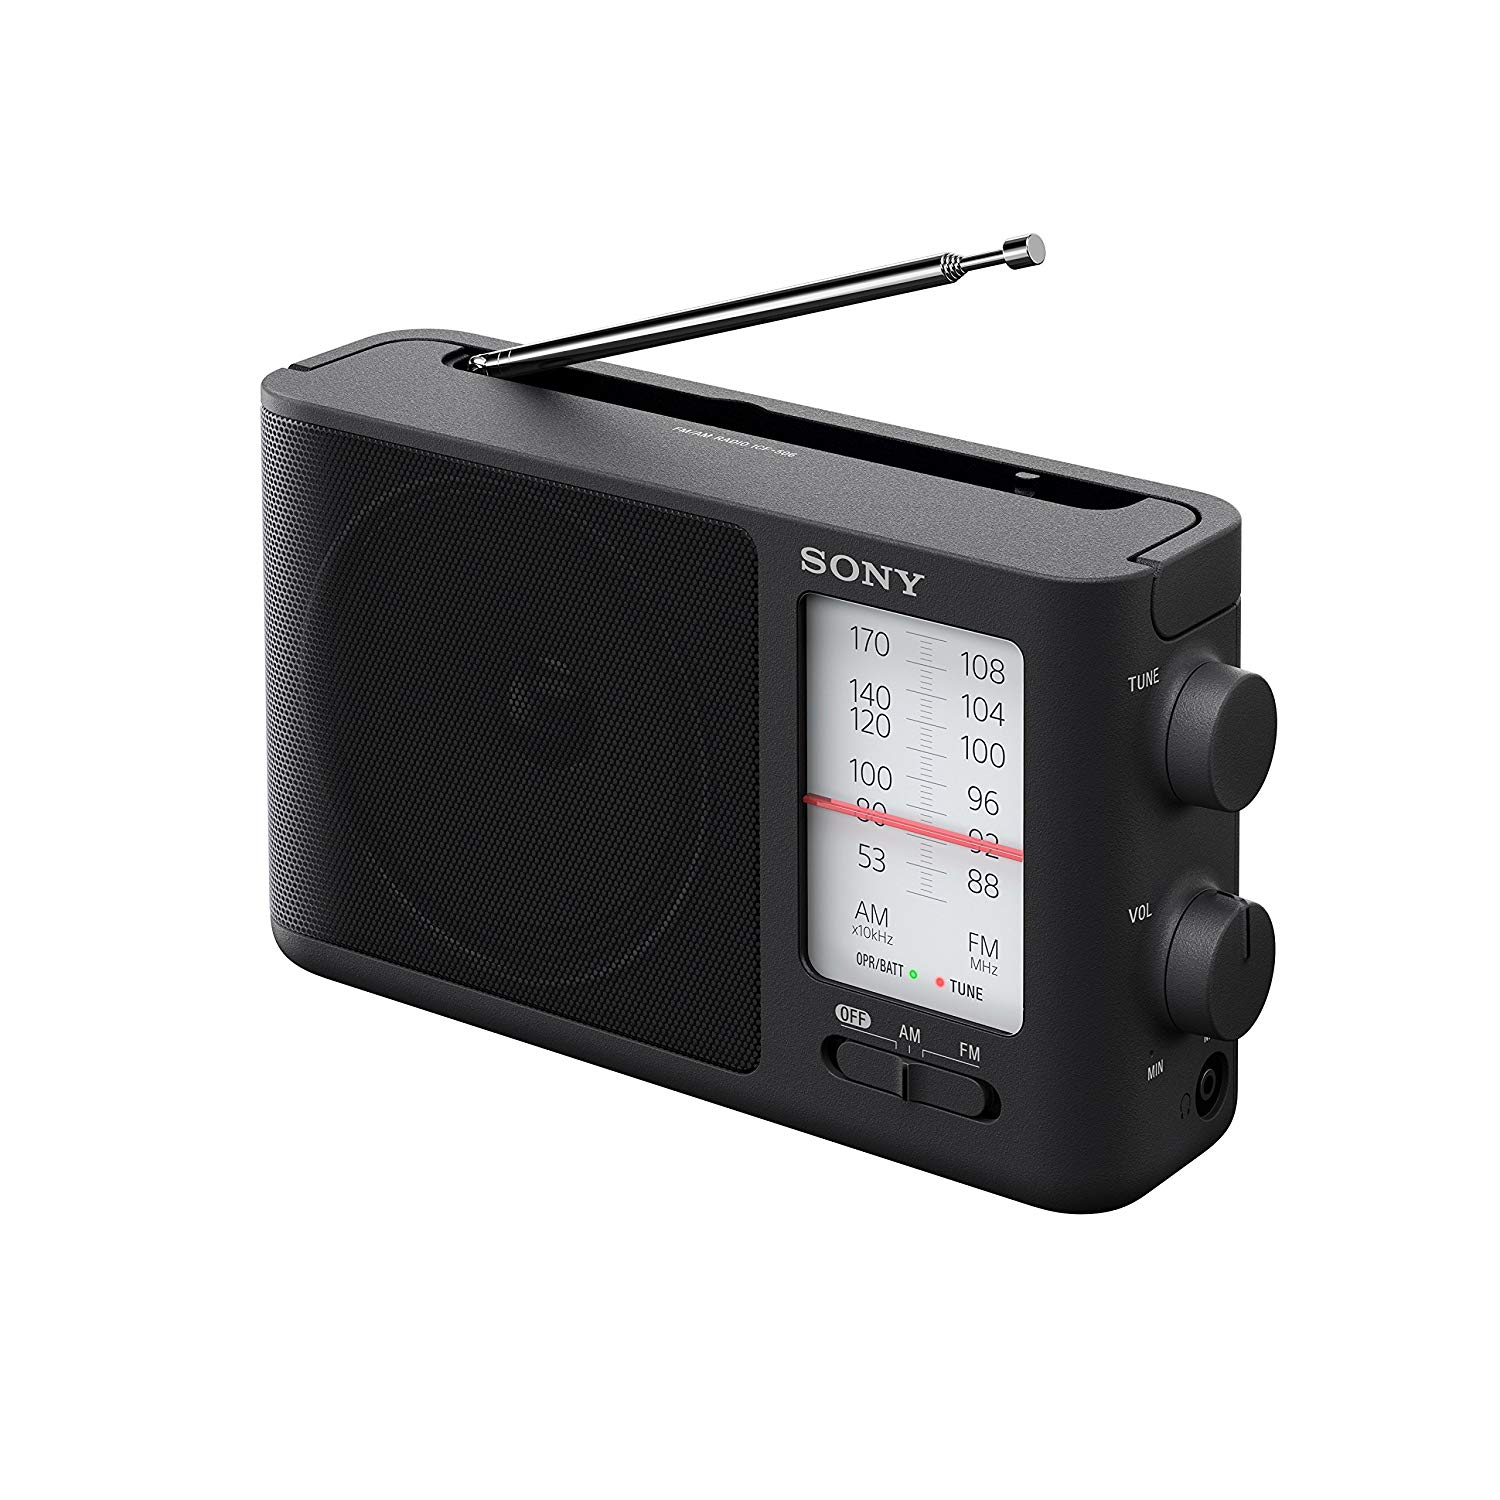 Sony ICF-506模拟调谐便携式FM / AM收音机